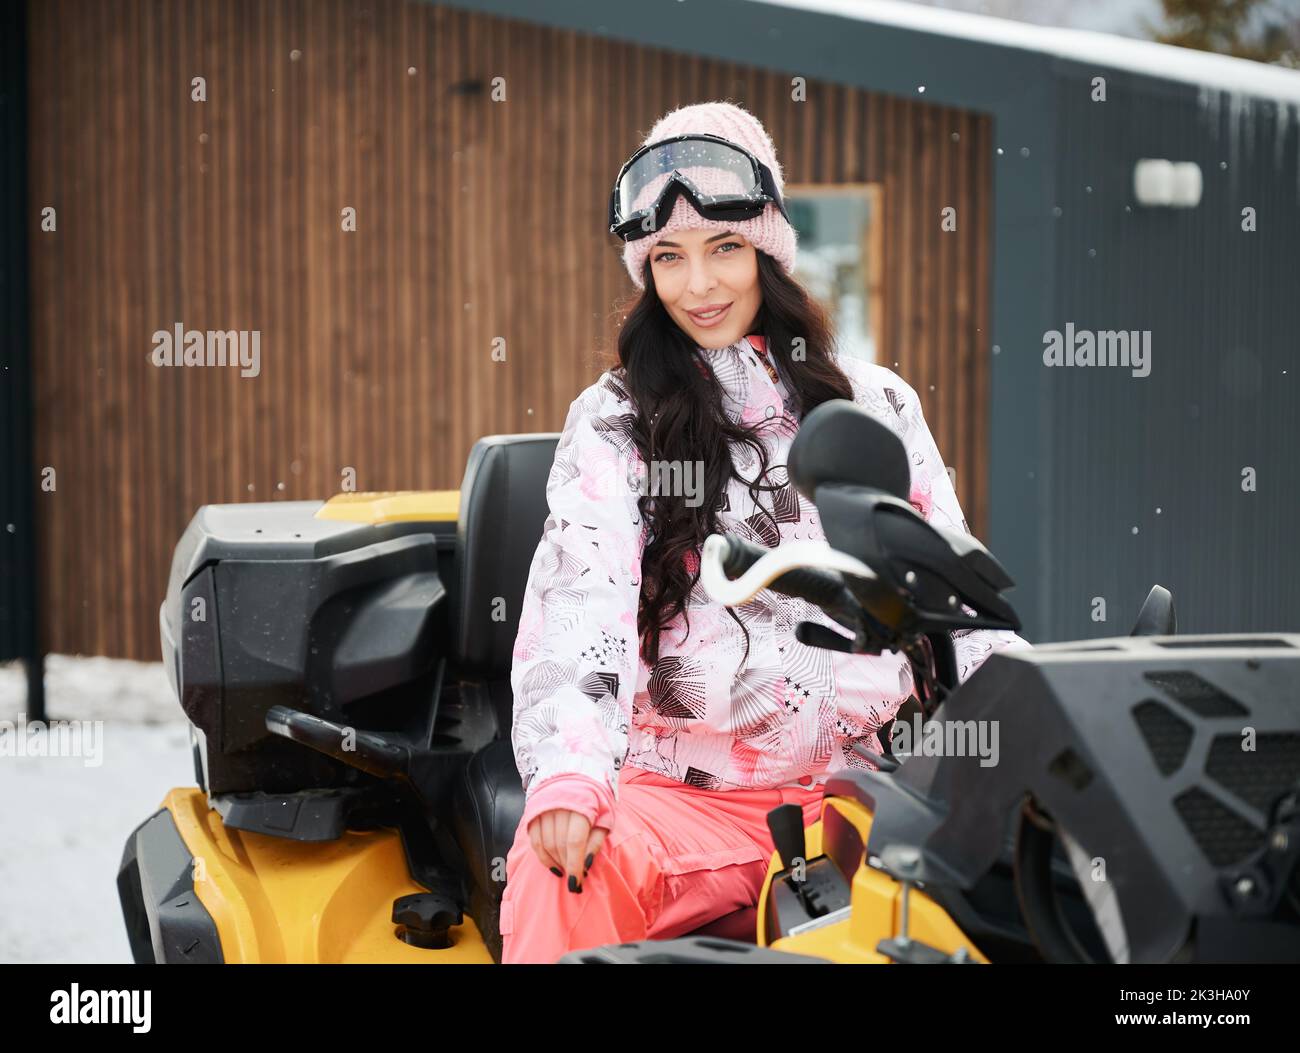 Porträt einer schönen Frau, die auf Geländewagen-Geländewagen-ATV mit Holzhaus im Hintergrund posiert. Konzept der aktiven Freizeit und Winteraktivitäten. Stockfoto